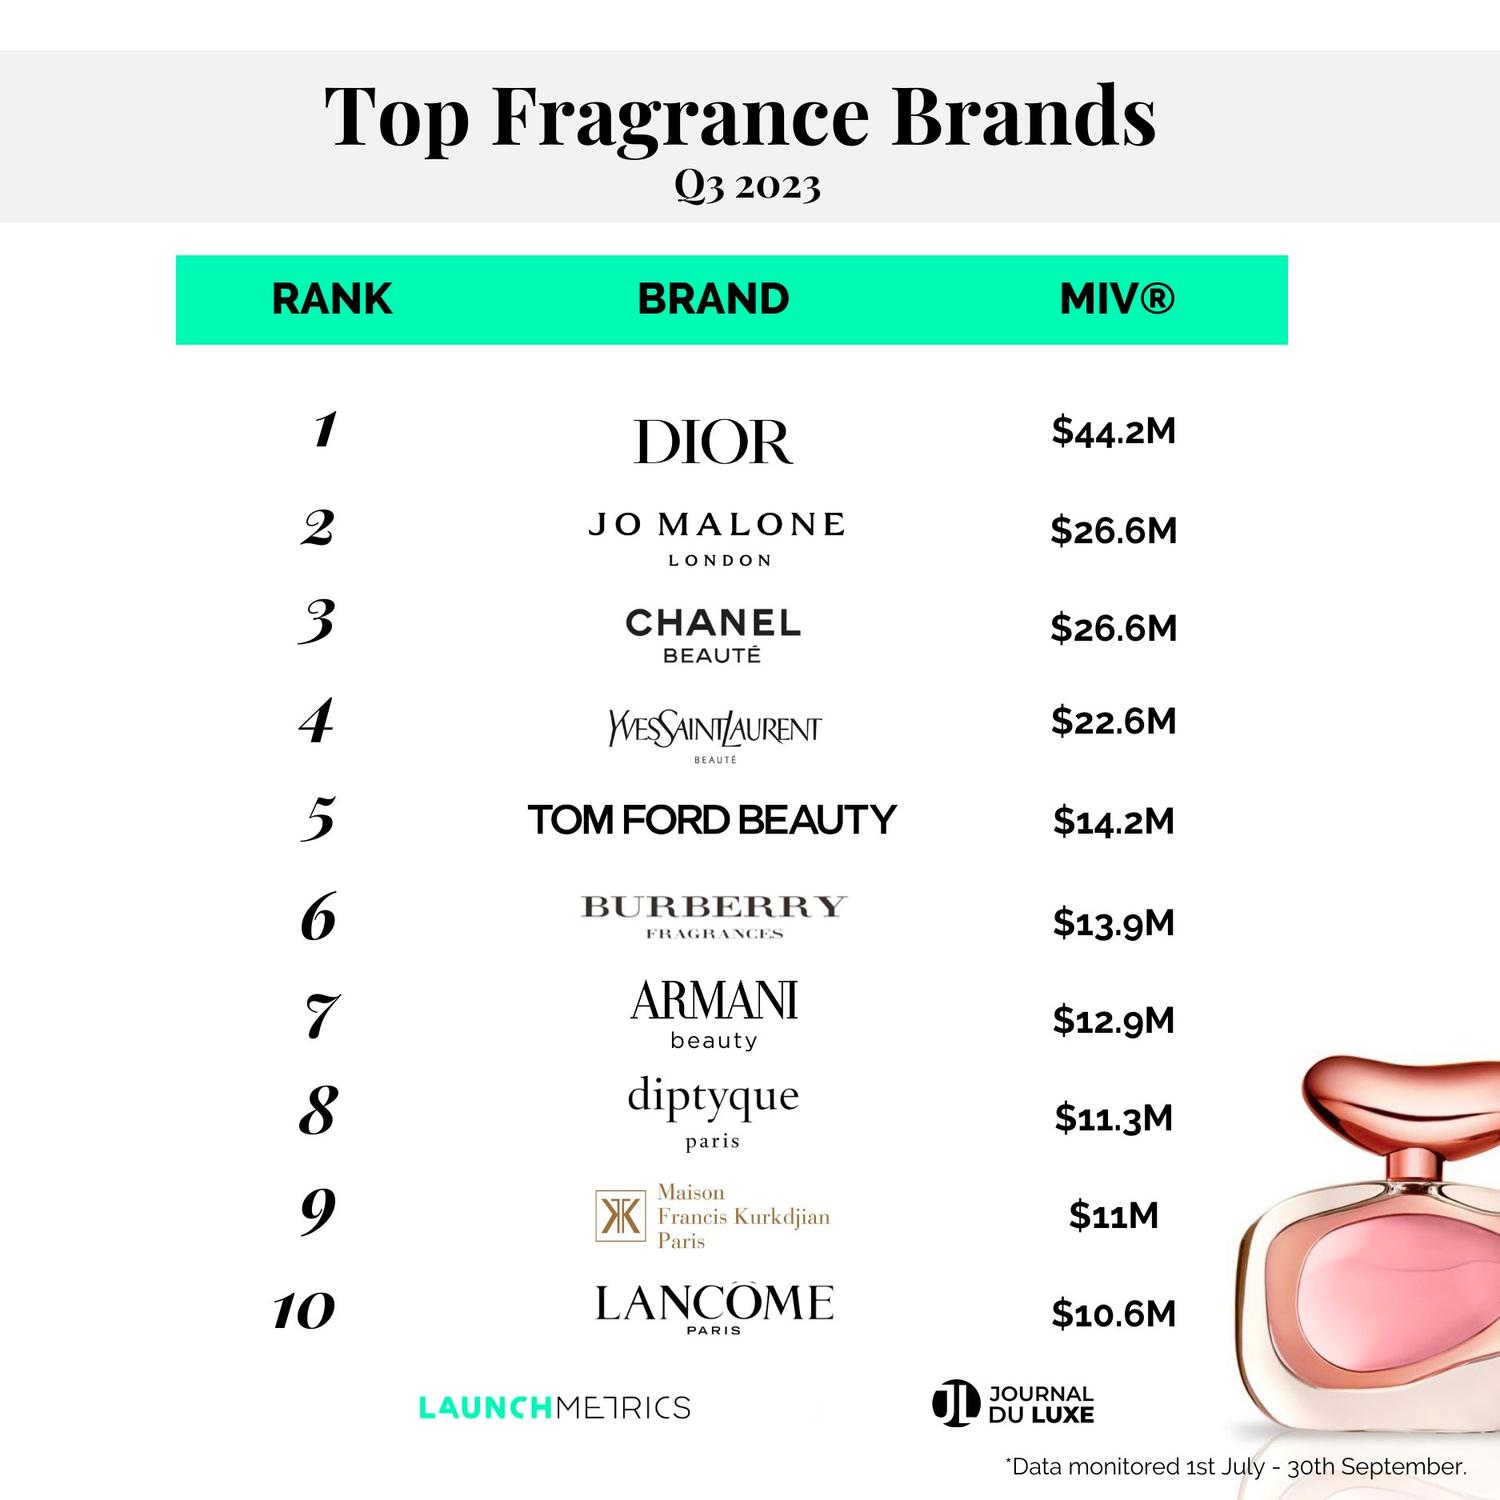 launchmetrics journal du luxe marques parfums miv 2023